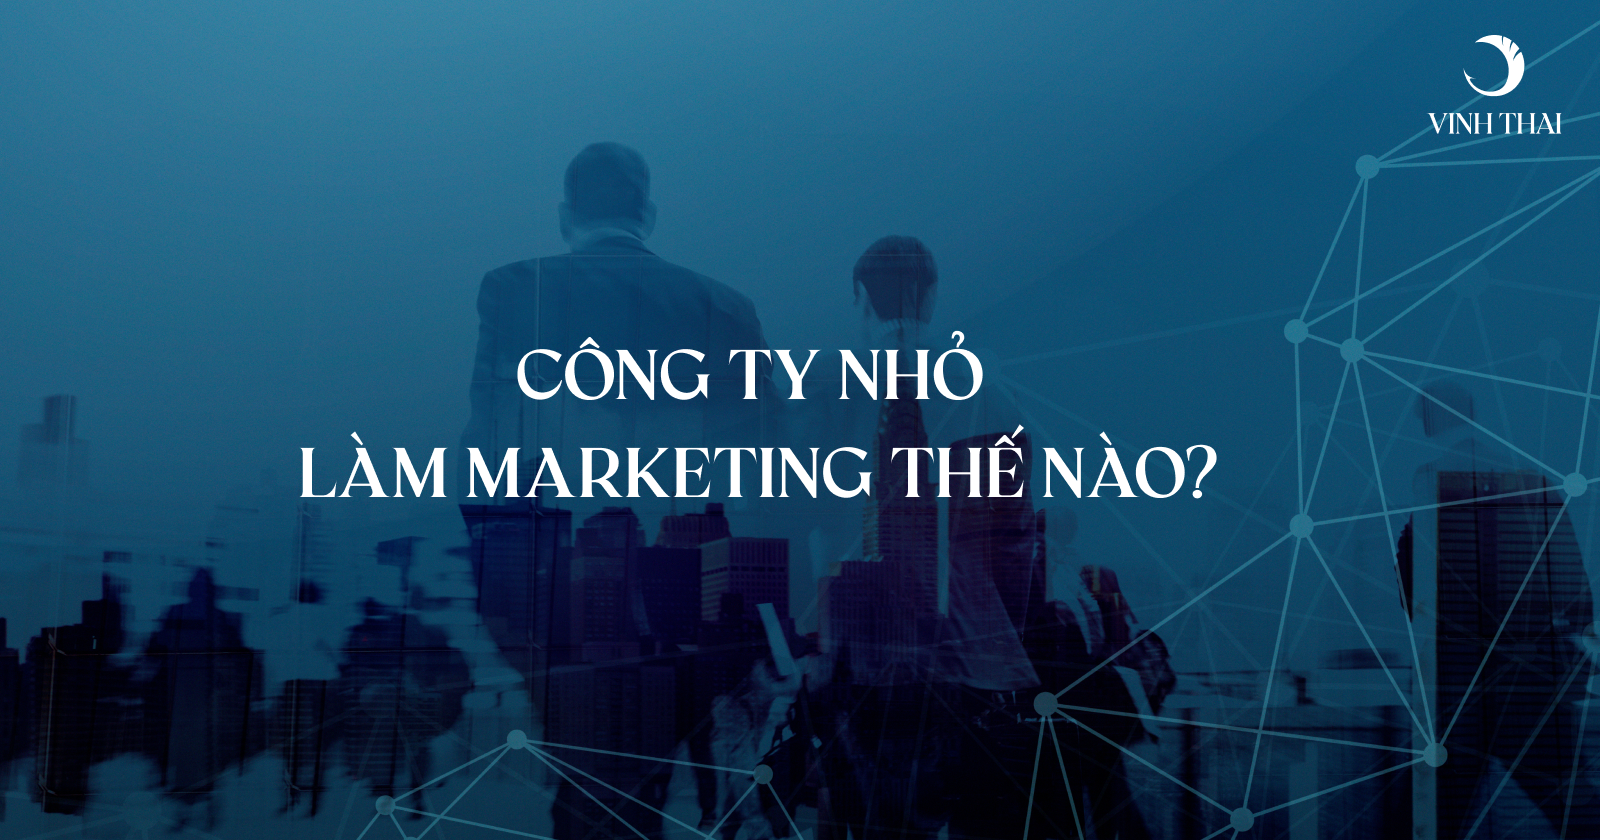 Cong-ty-nho-lam-marketing-the-nao